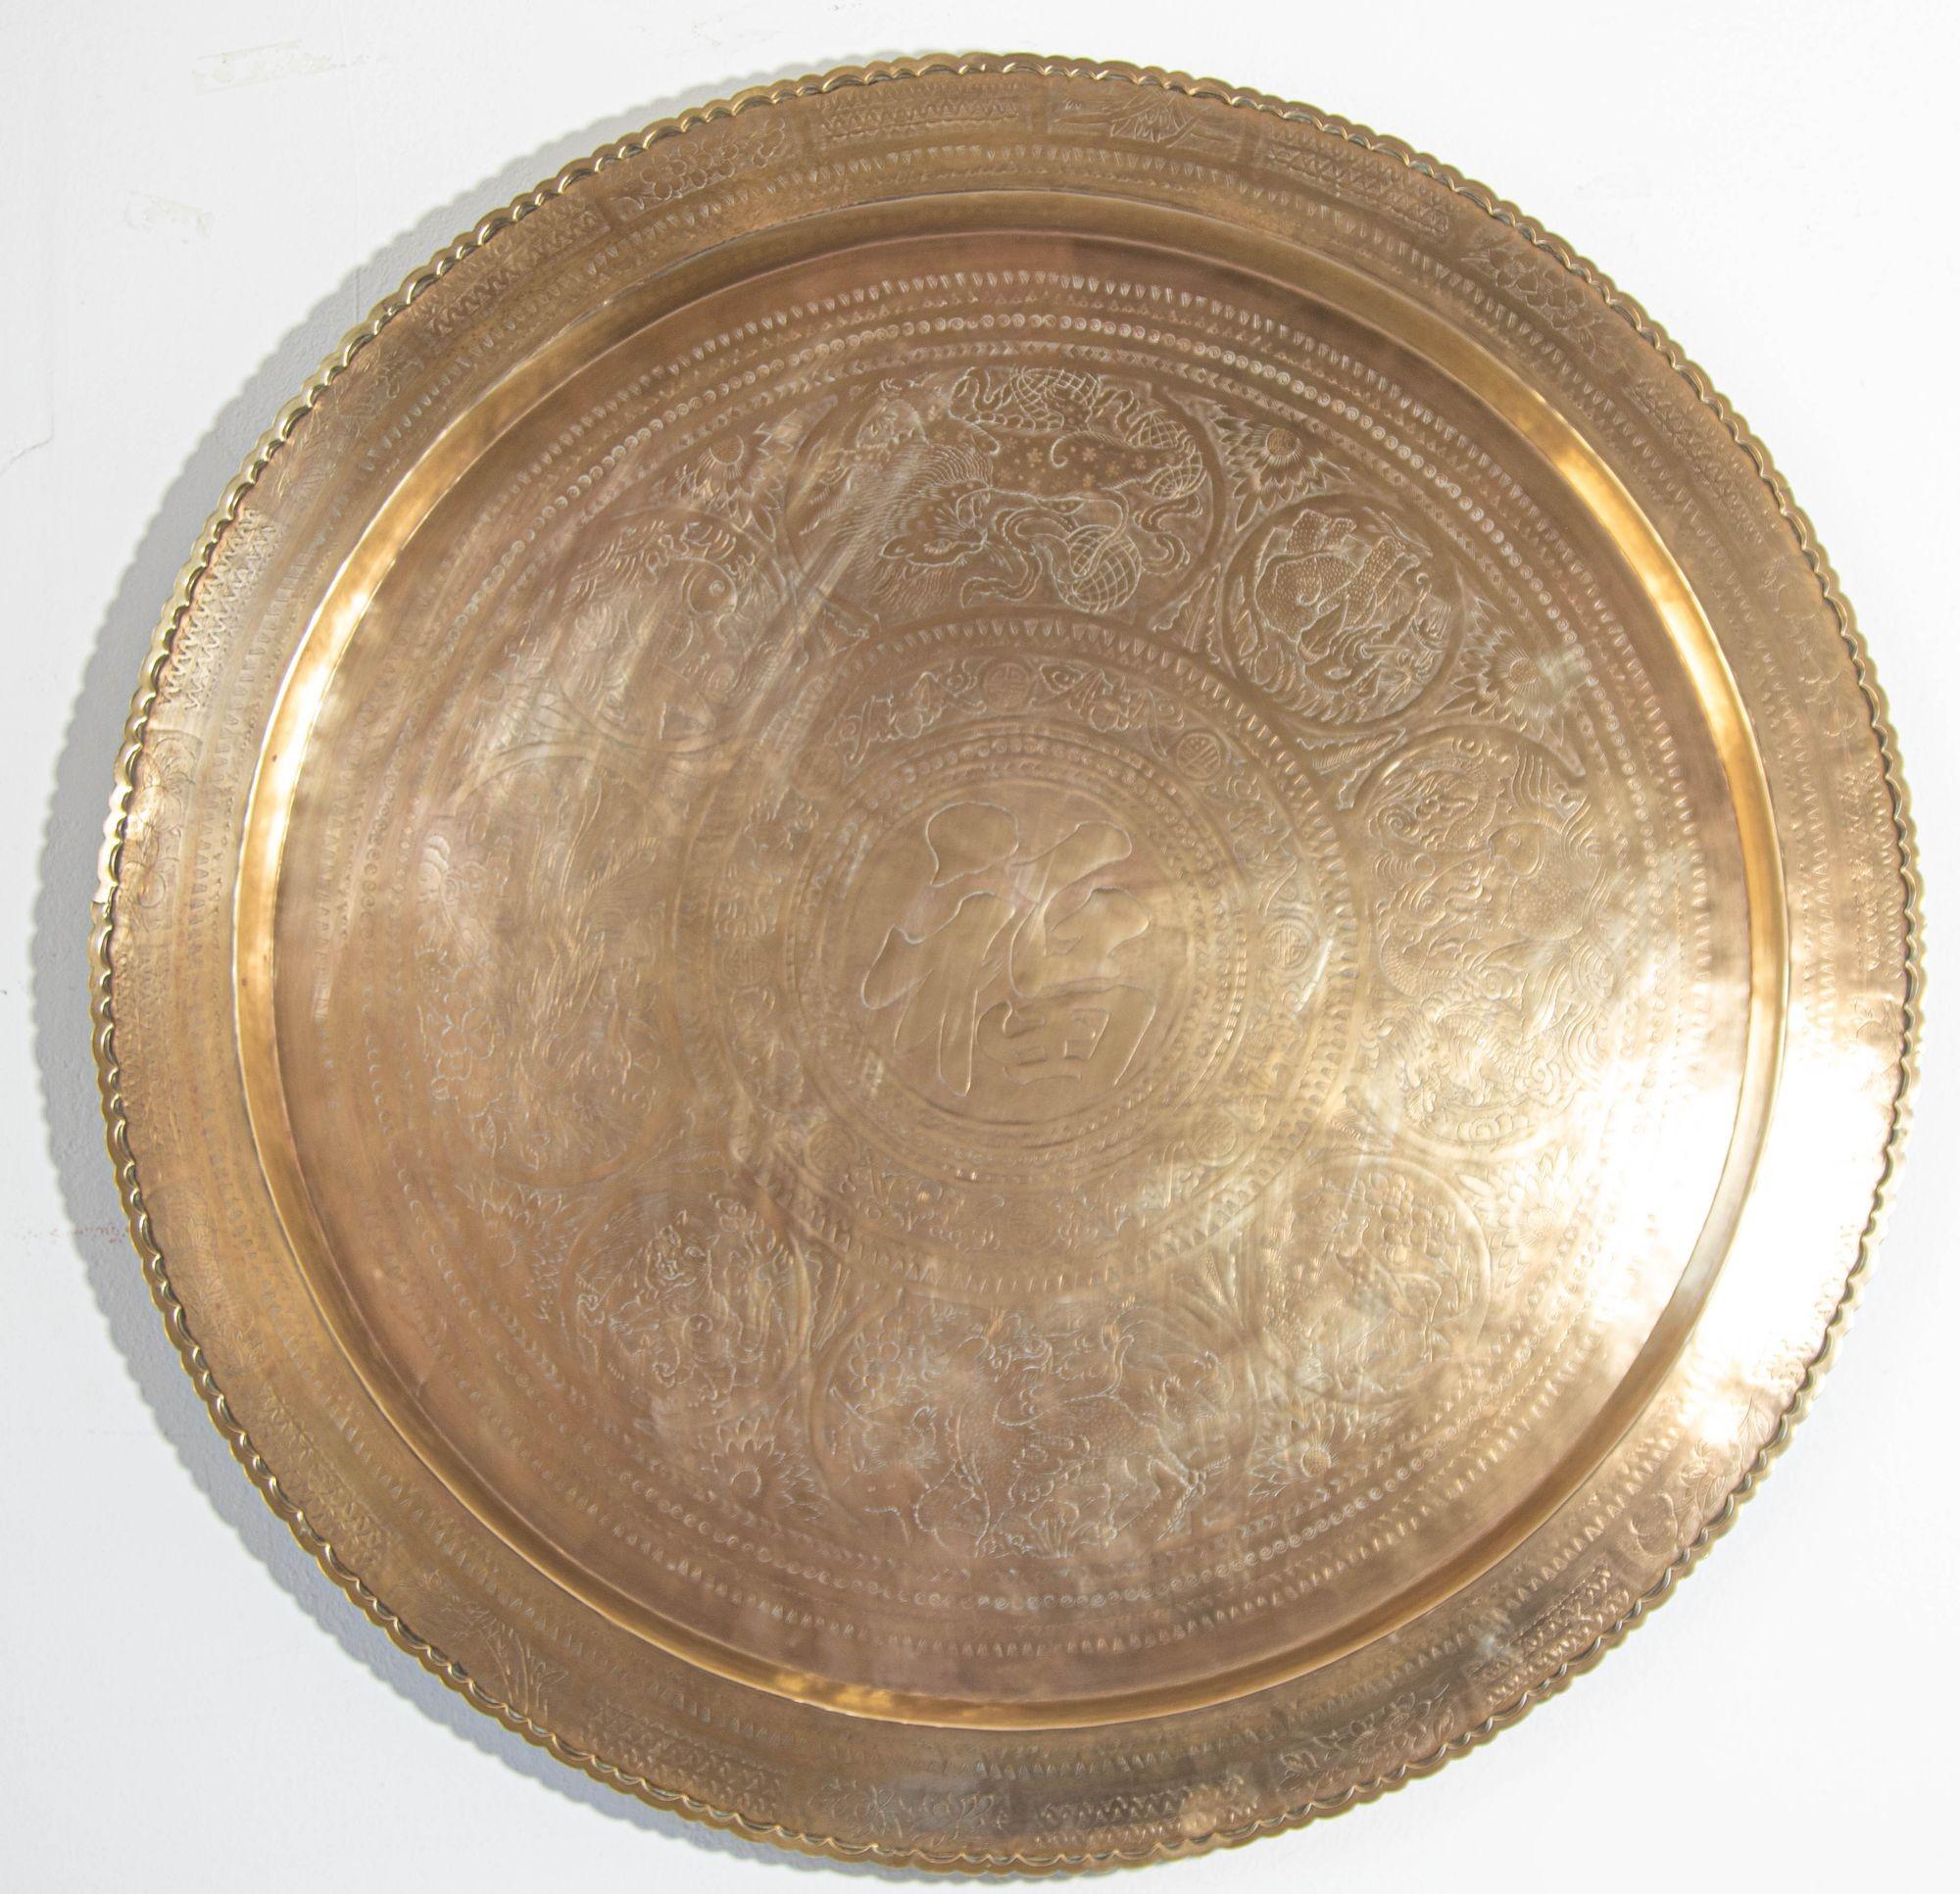 Großes asiatisches, handgefertigtes rundes Tablett mit Patina aus den 1950er Jahren.
Das Tablett ist mit einem Aufhängehaken versehen, so dass es an der Wand aufgehängt oder flach als Tafelaufsatz auf den Tisch gestellt werden kann.
Seine Oberfläche